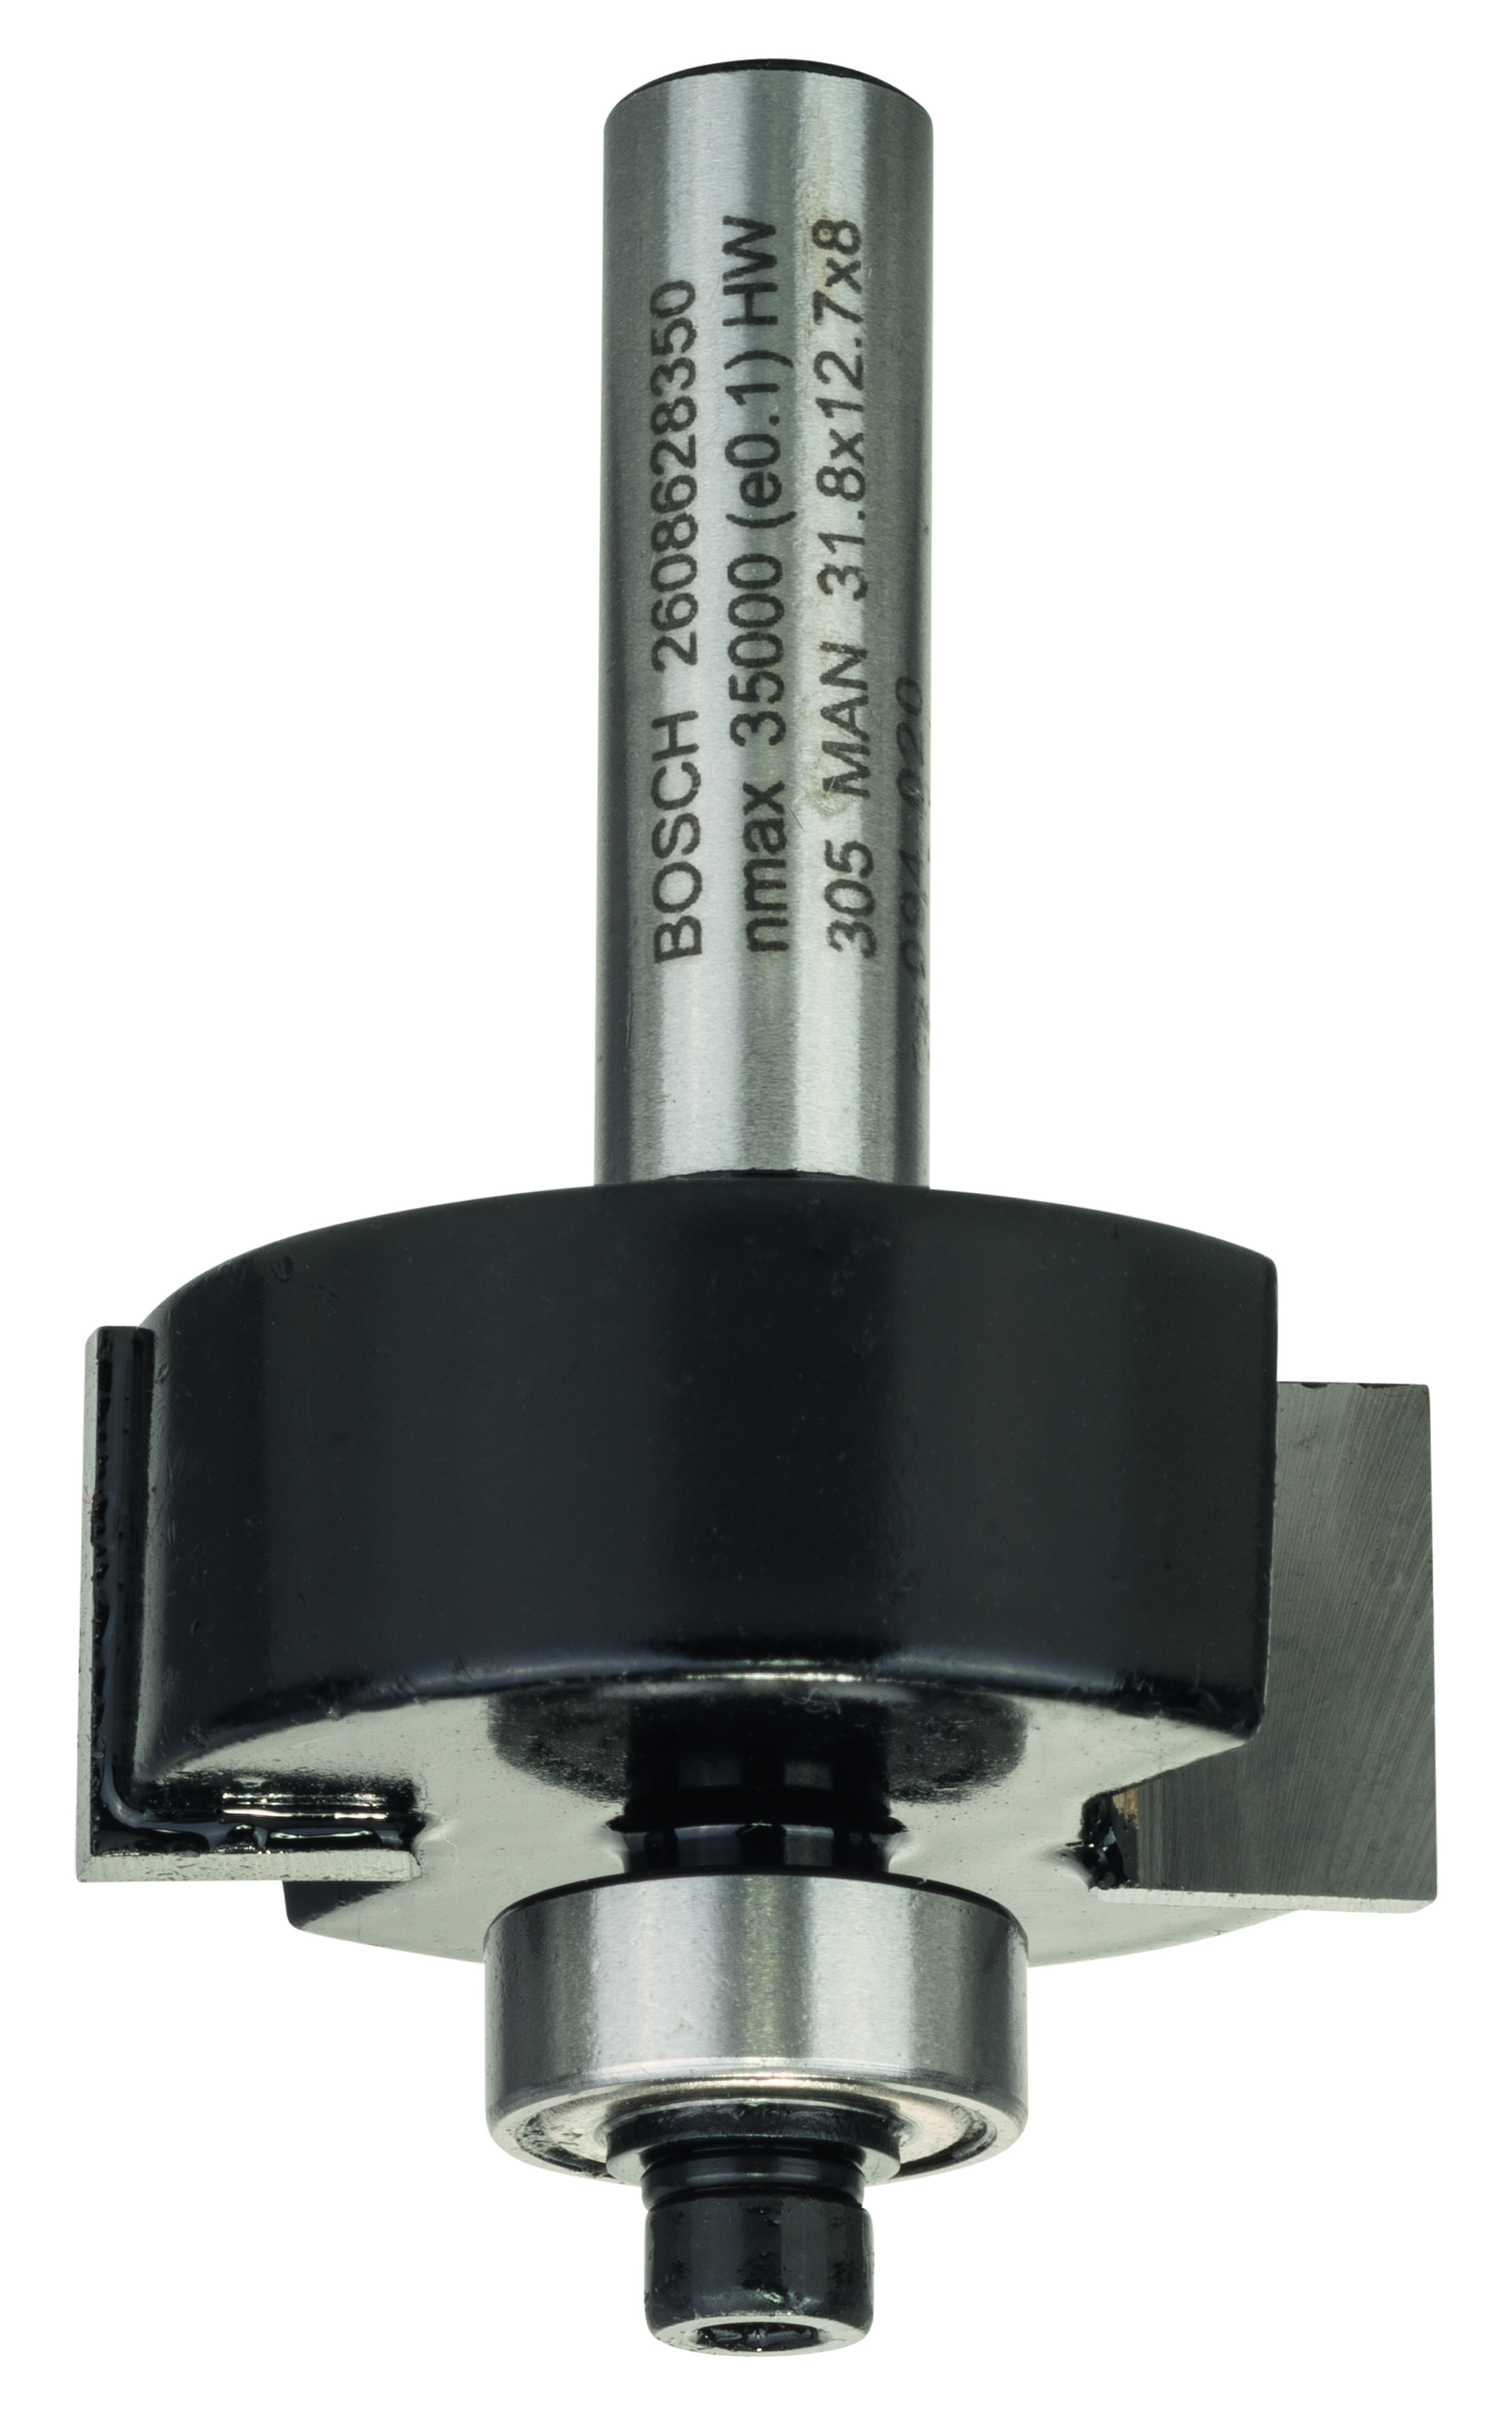 Bosch Scheibennutenfräser 4mm HM/CT mit Anlaufkugellager 8mm B 9,6mm Fräser 